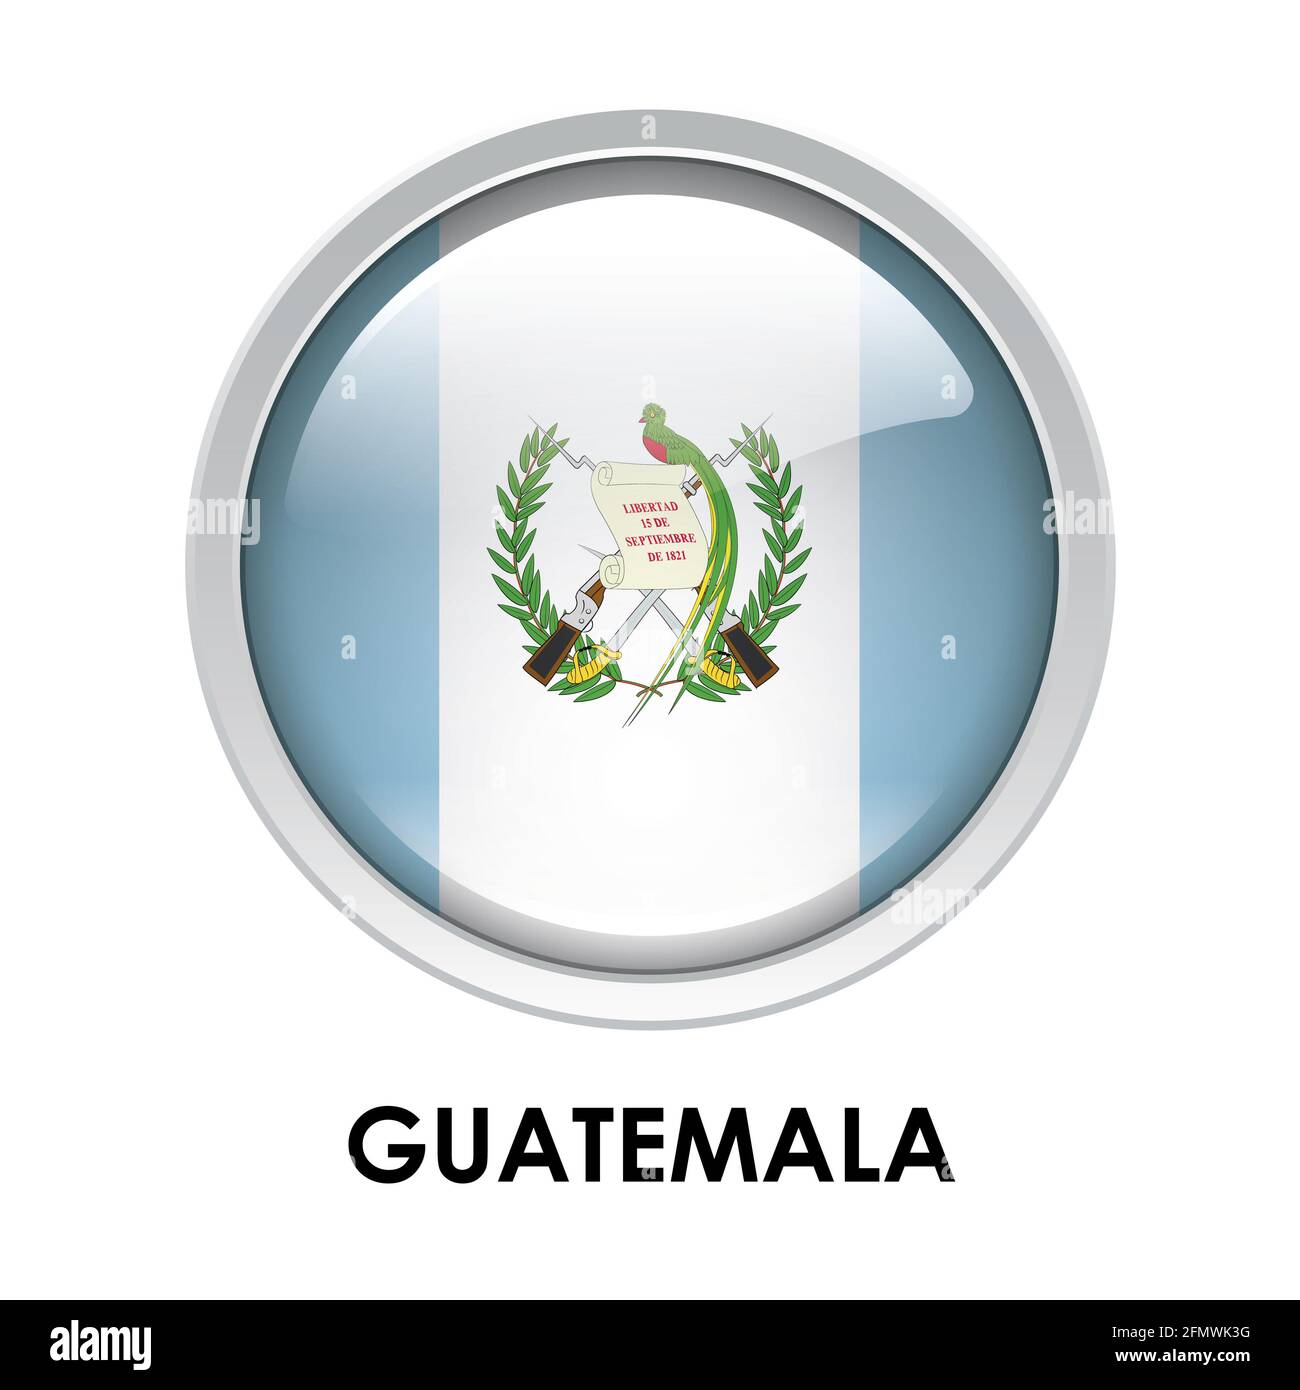 Round flag of Guatemala Stock Photo